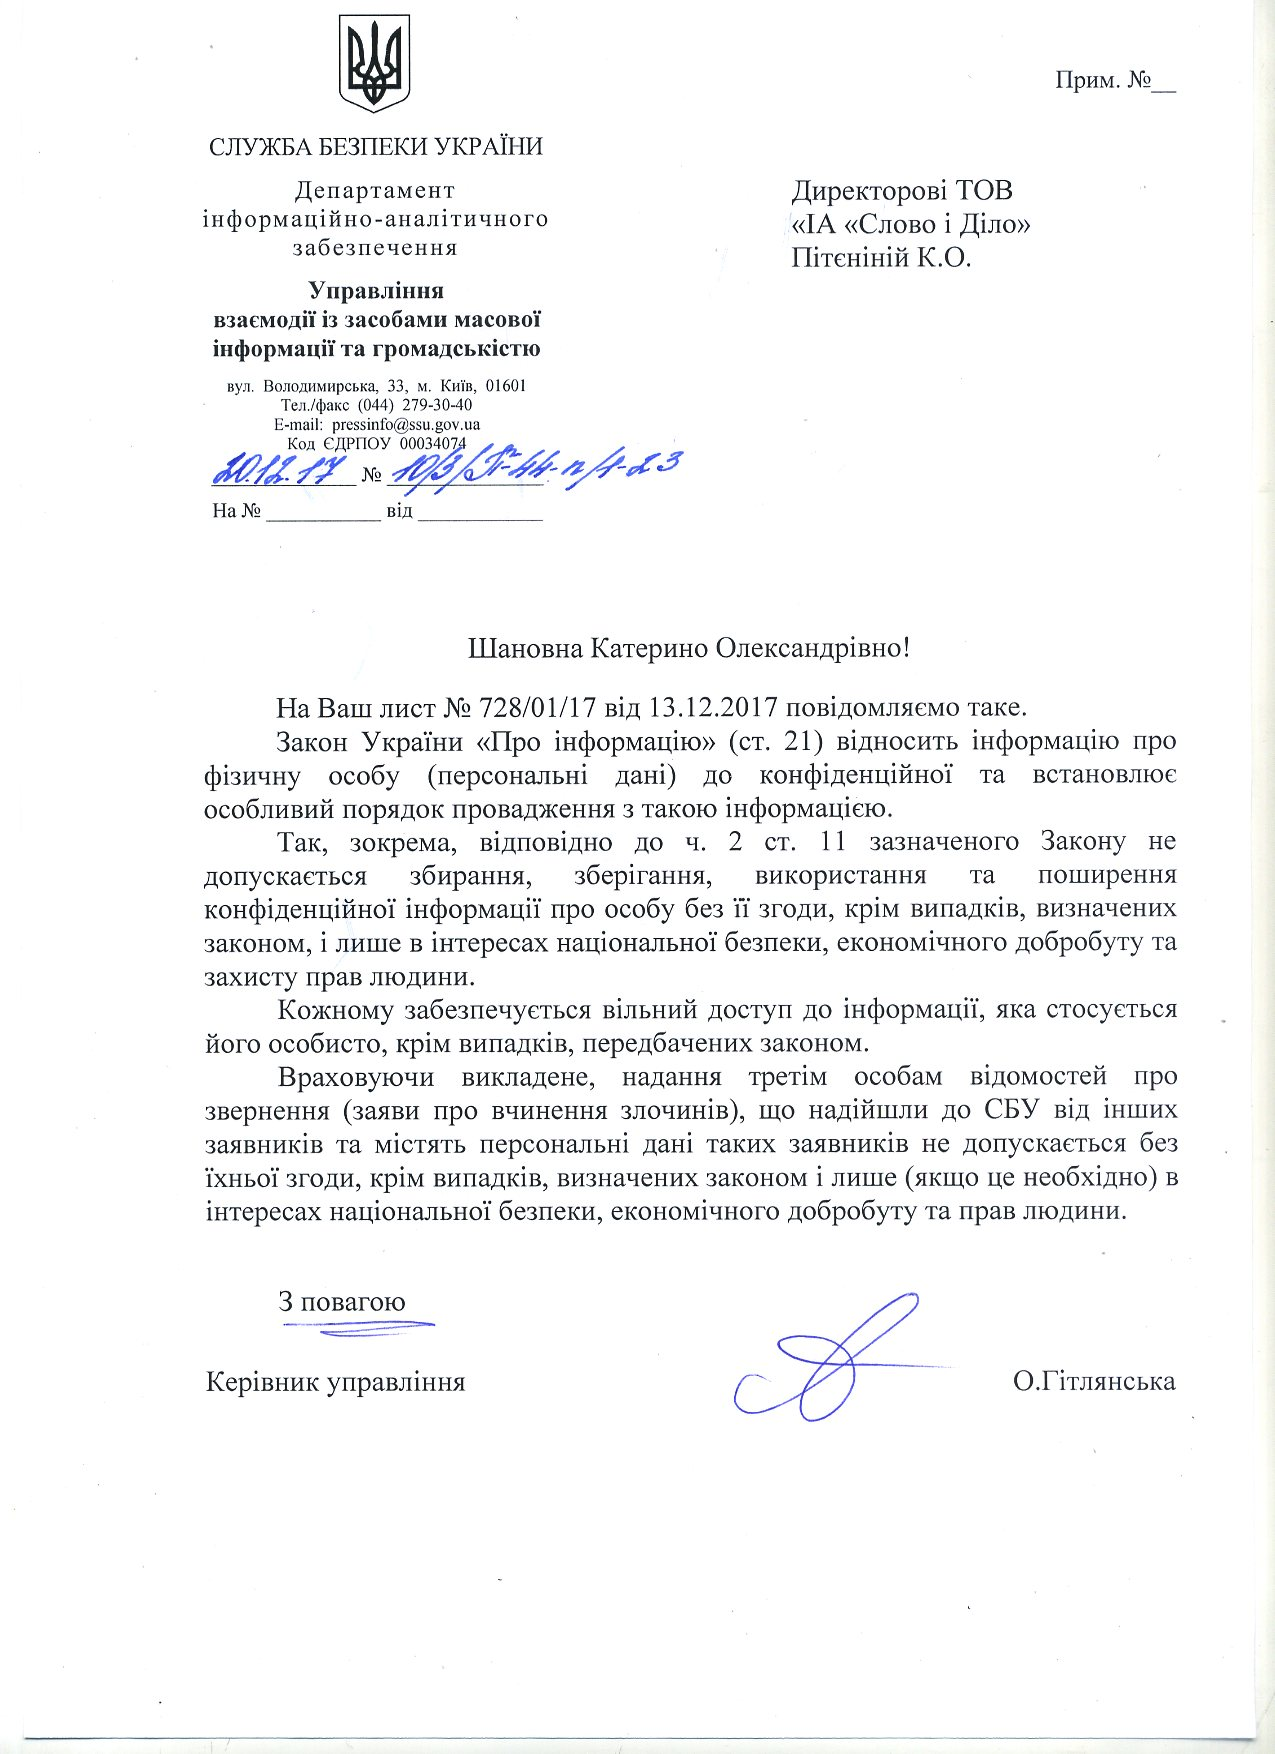 Лист від Служби безпеки України